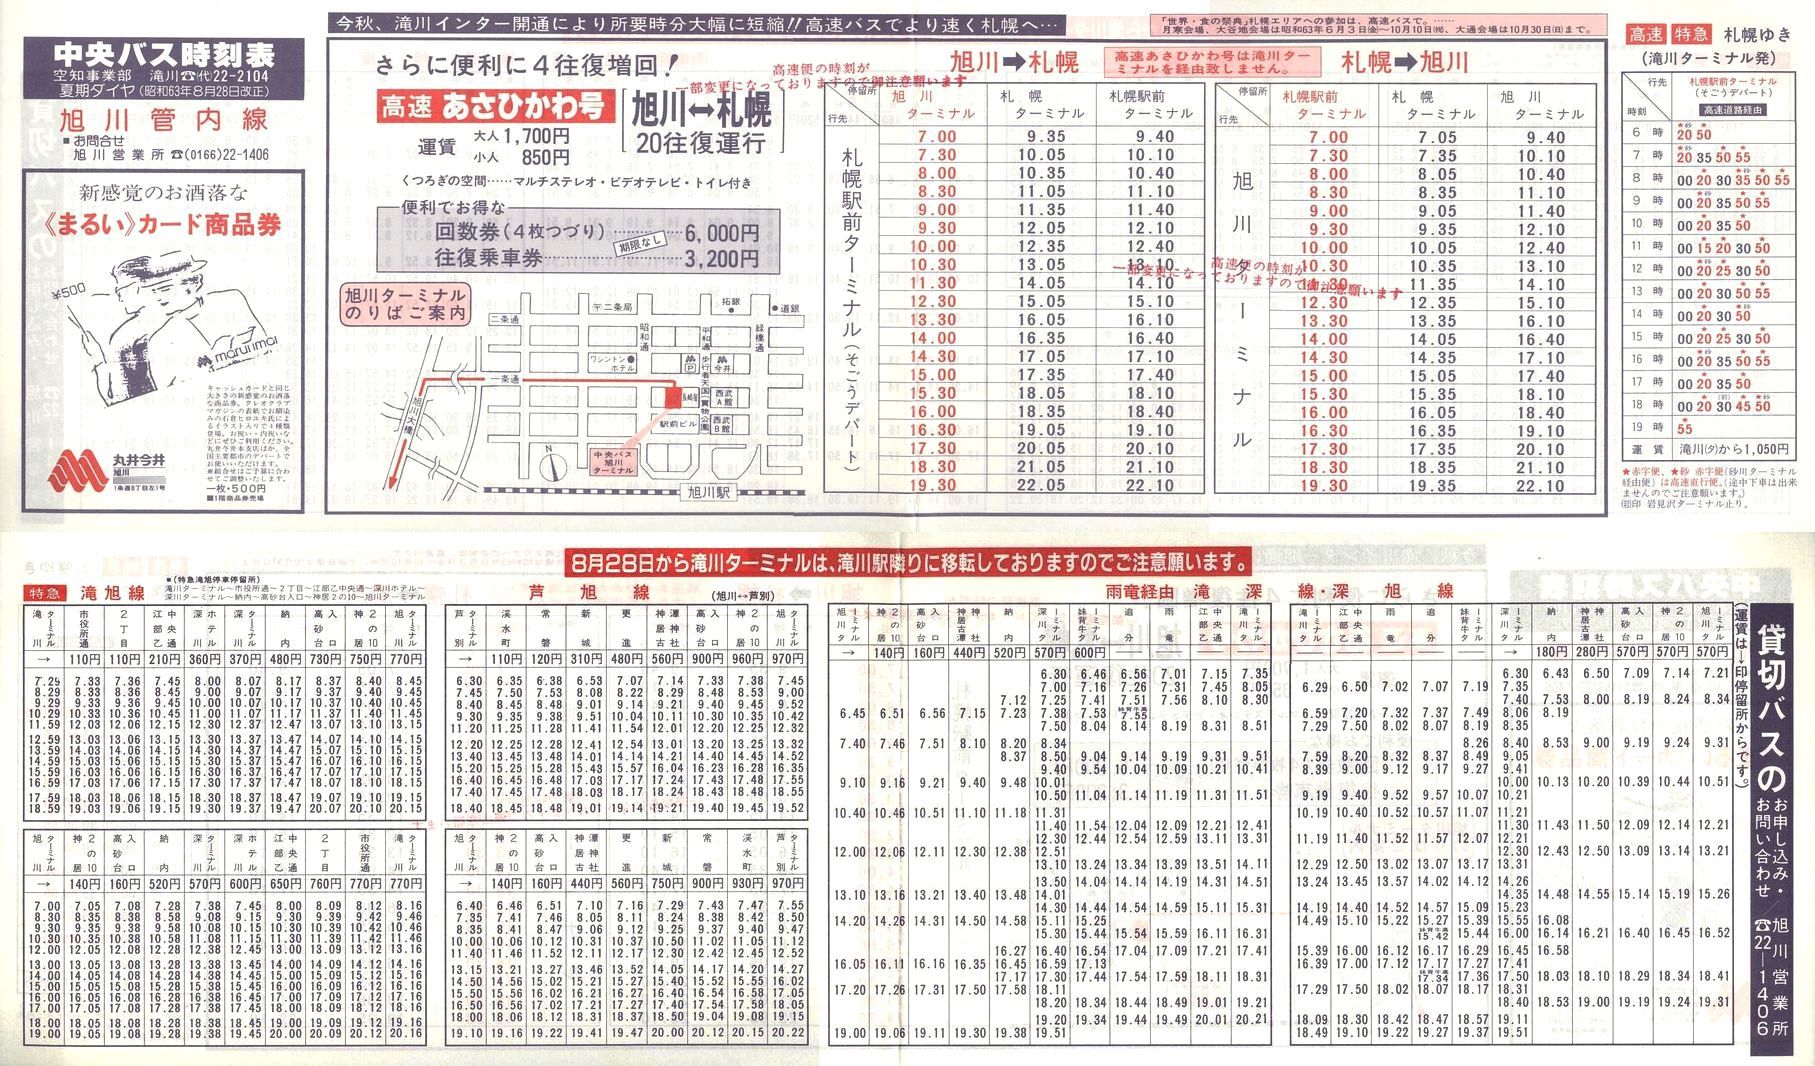 1988-08-28改正_北海道中央バス(空知)_旭川管内線時刻表